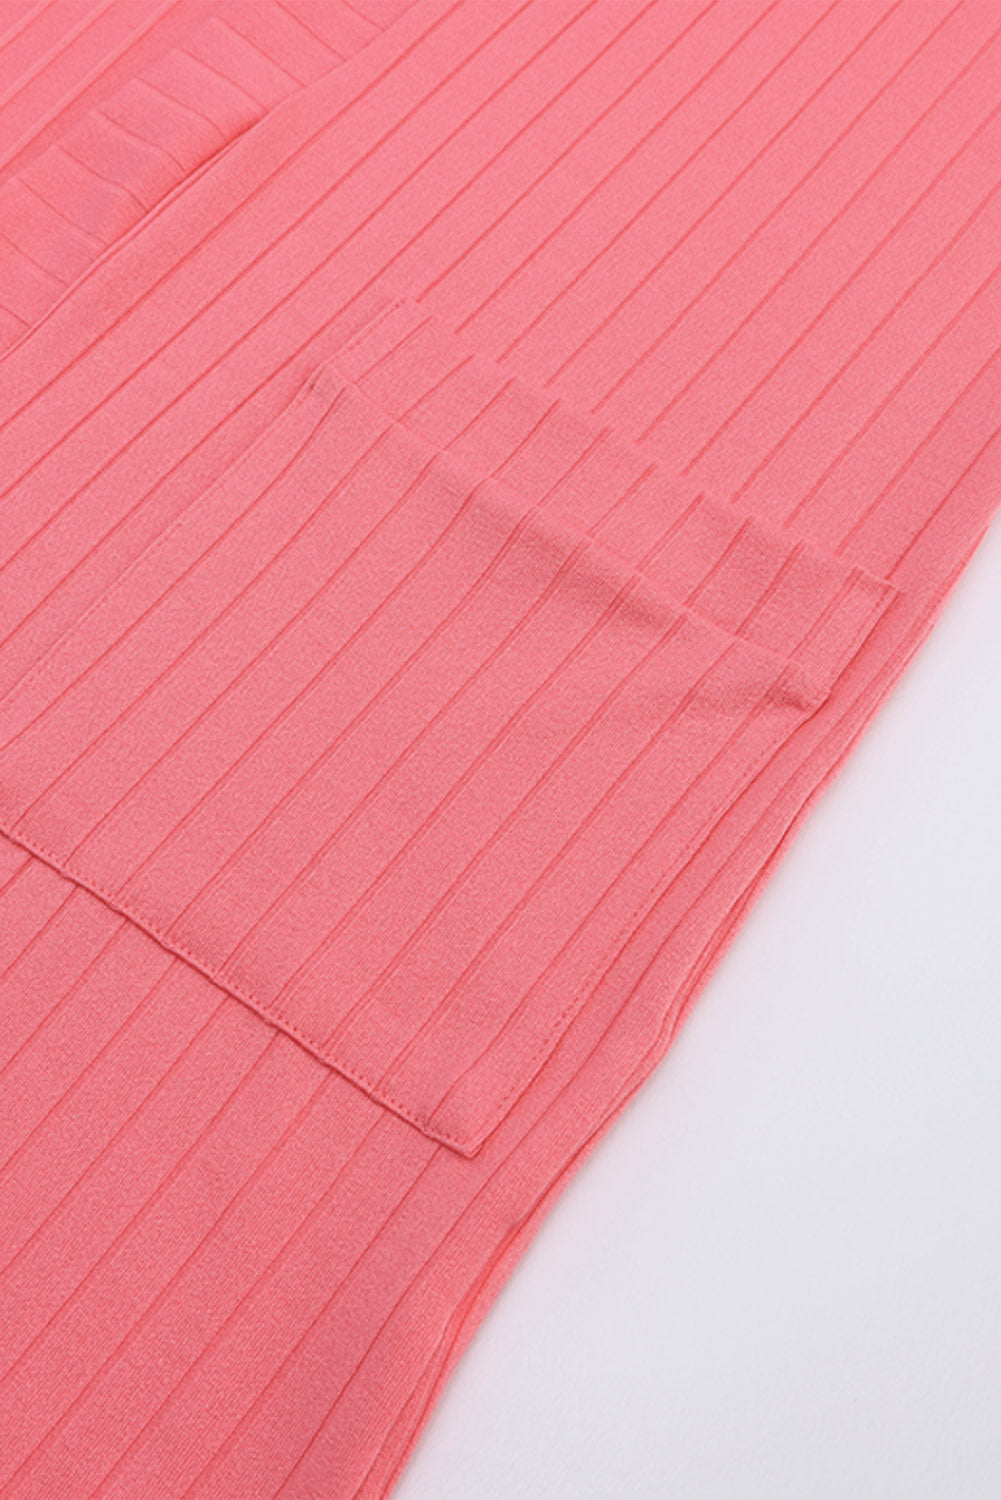 Rožnata odprta pletena jopica z žepi na sprednji strani